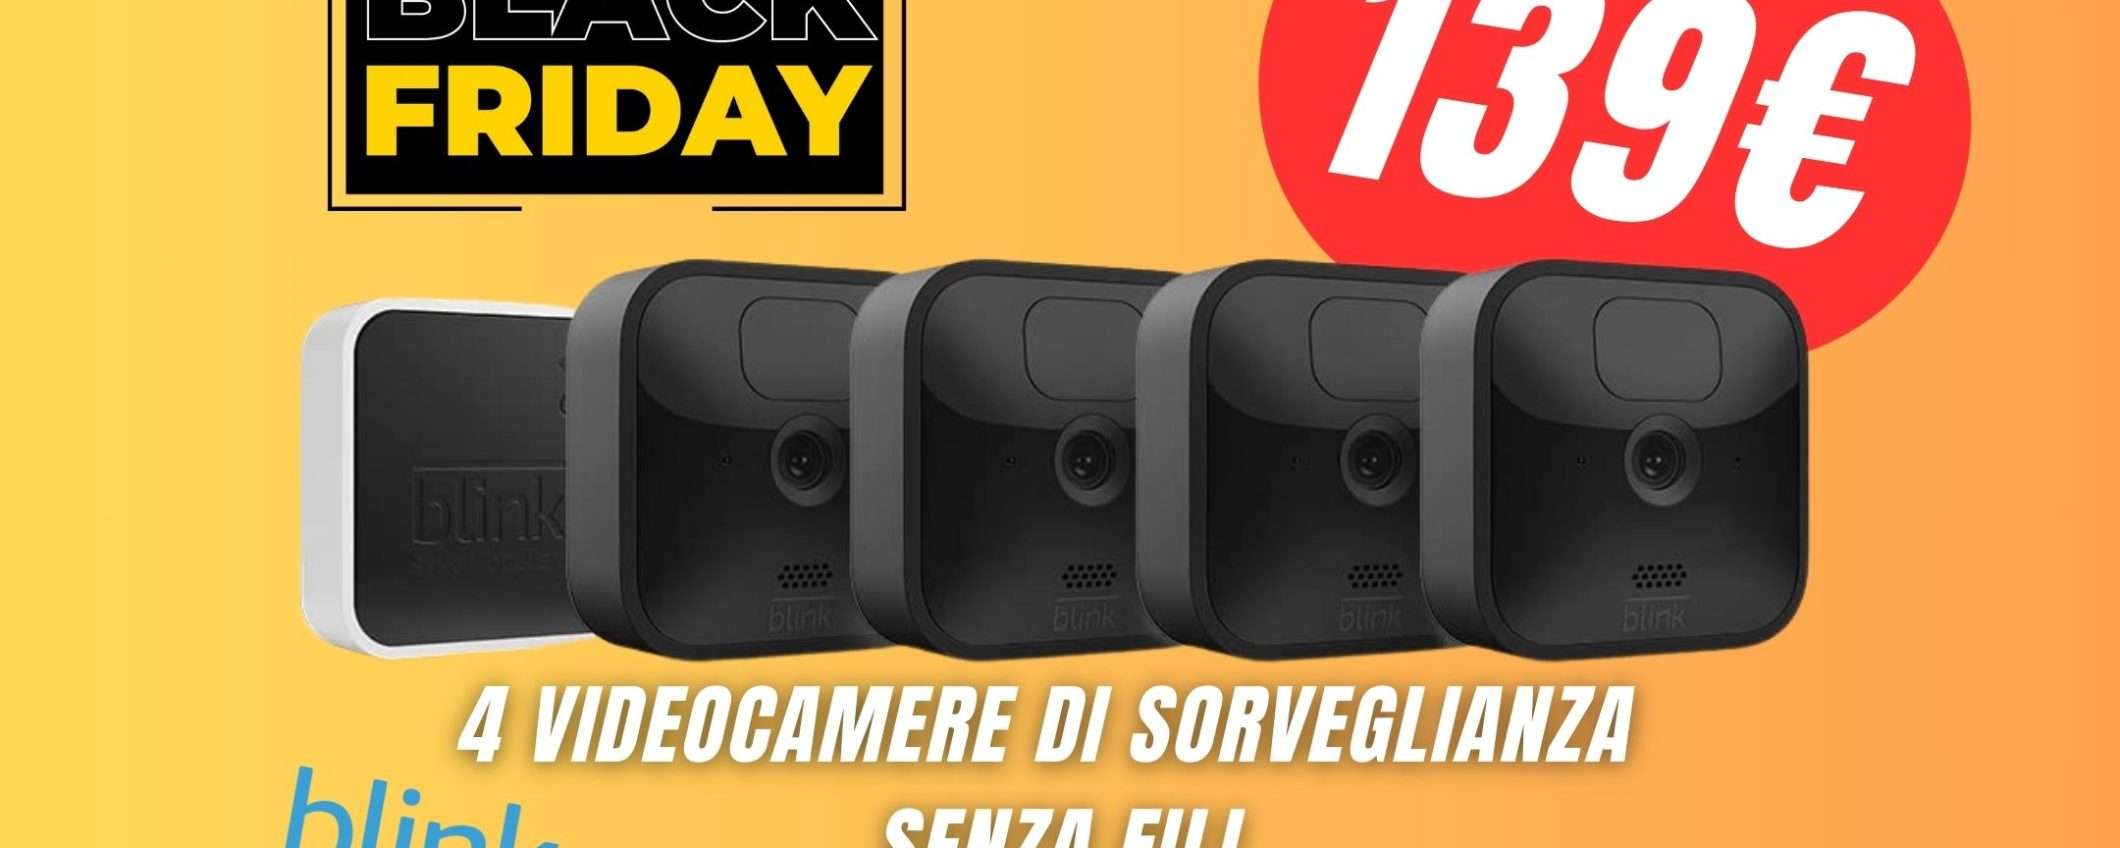 4 Videocamere di Sorveglianza Amazon SCONTATE a 139,49€ grazie al Black Friday!